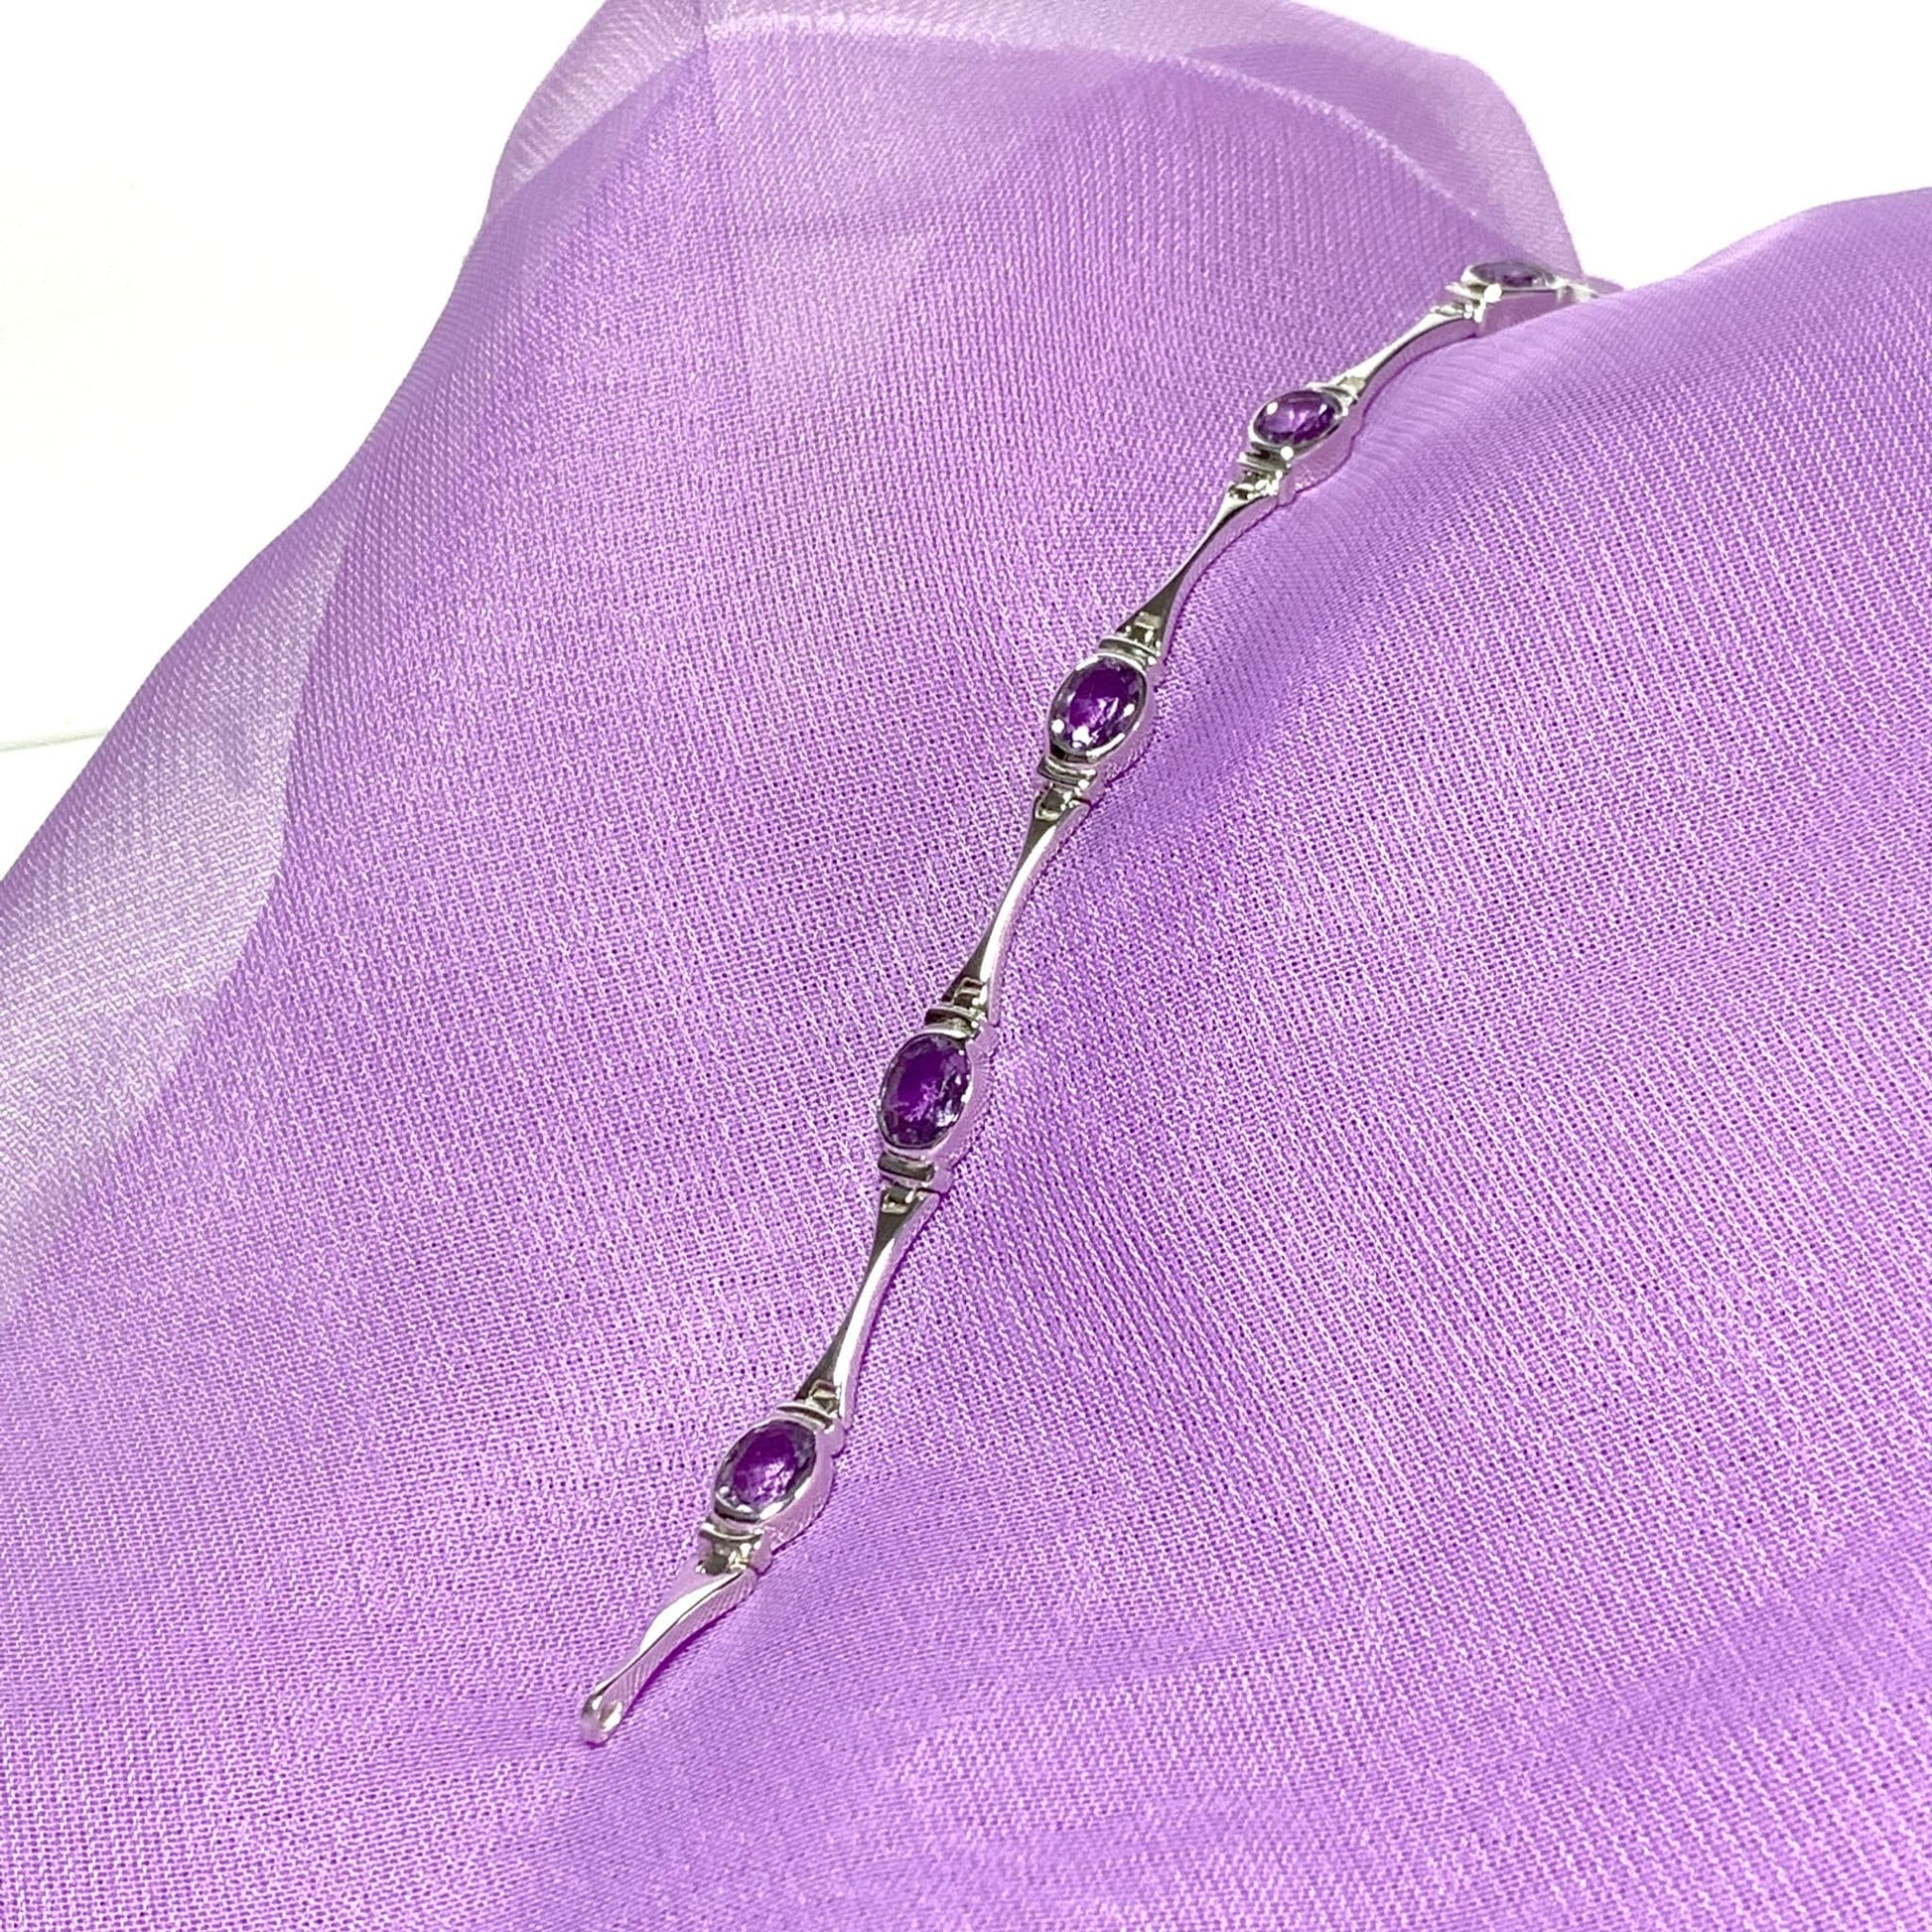 Oval purple amethyst sterling silver bracelet